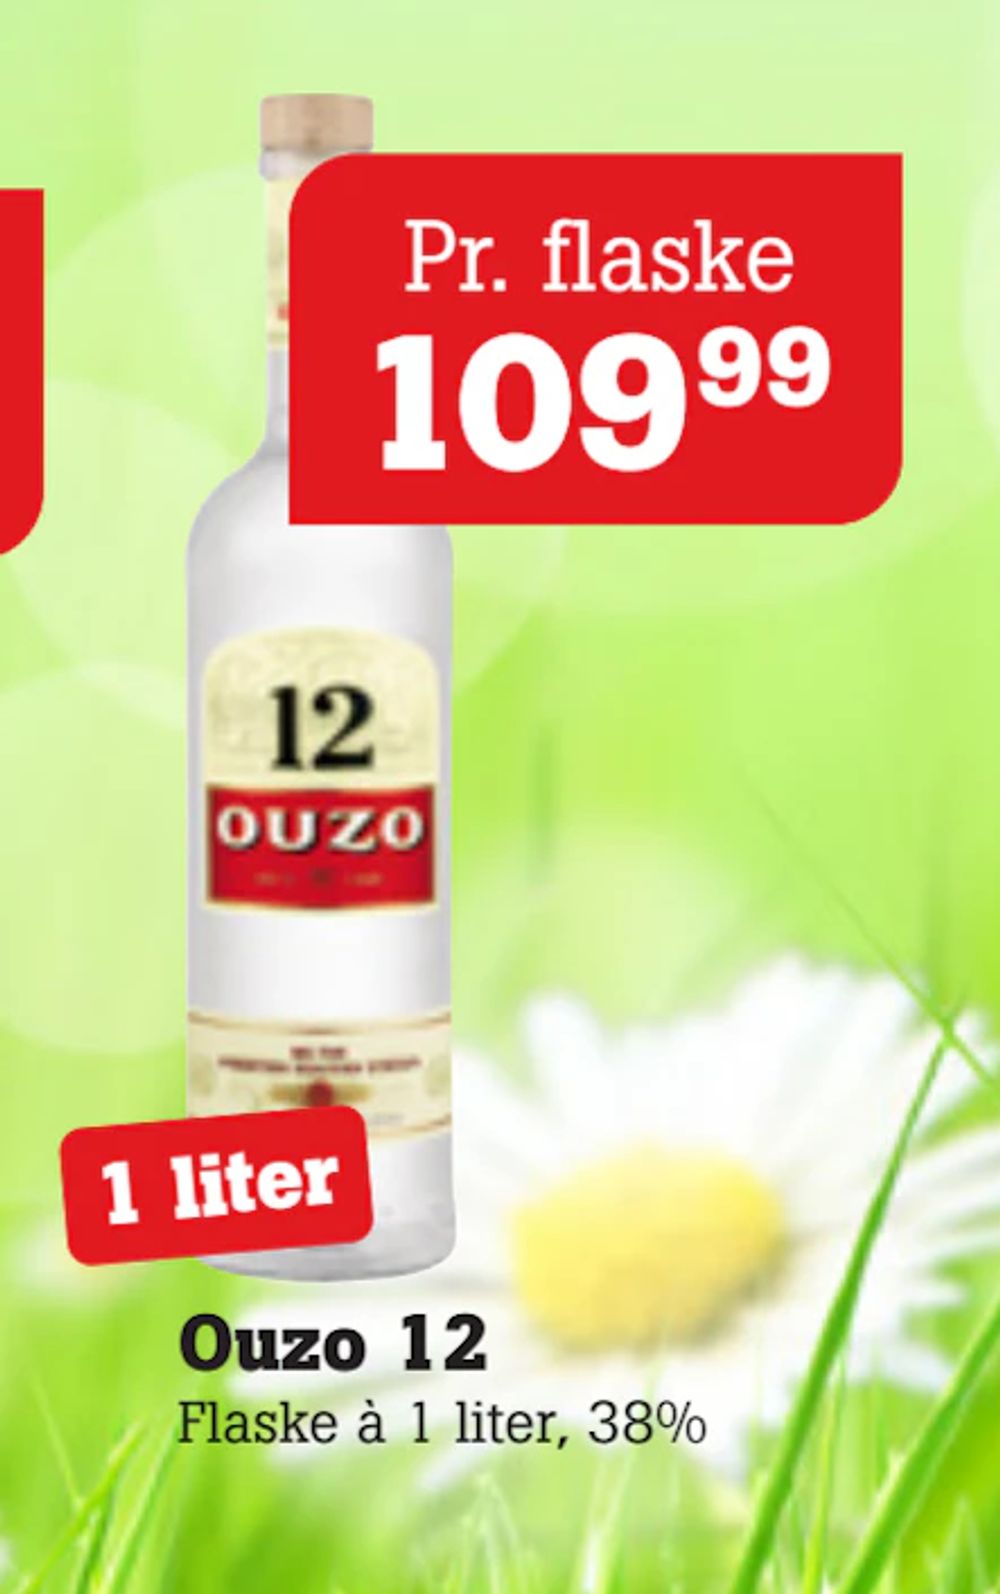 Tilbud på Ouzo 12 fra Poetzsch Padborg til 109,99 kr.